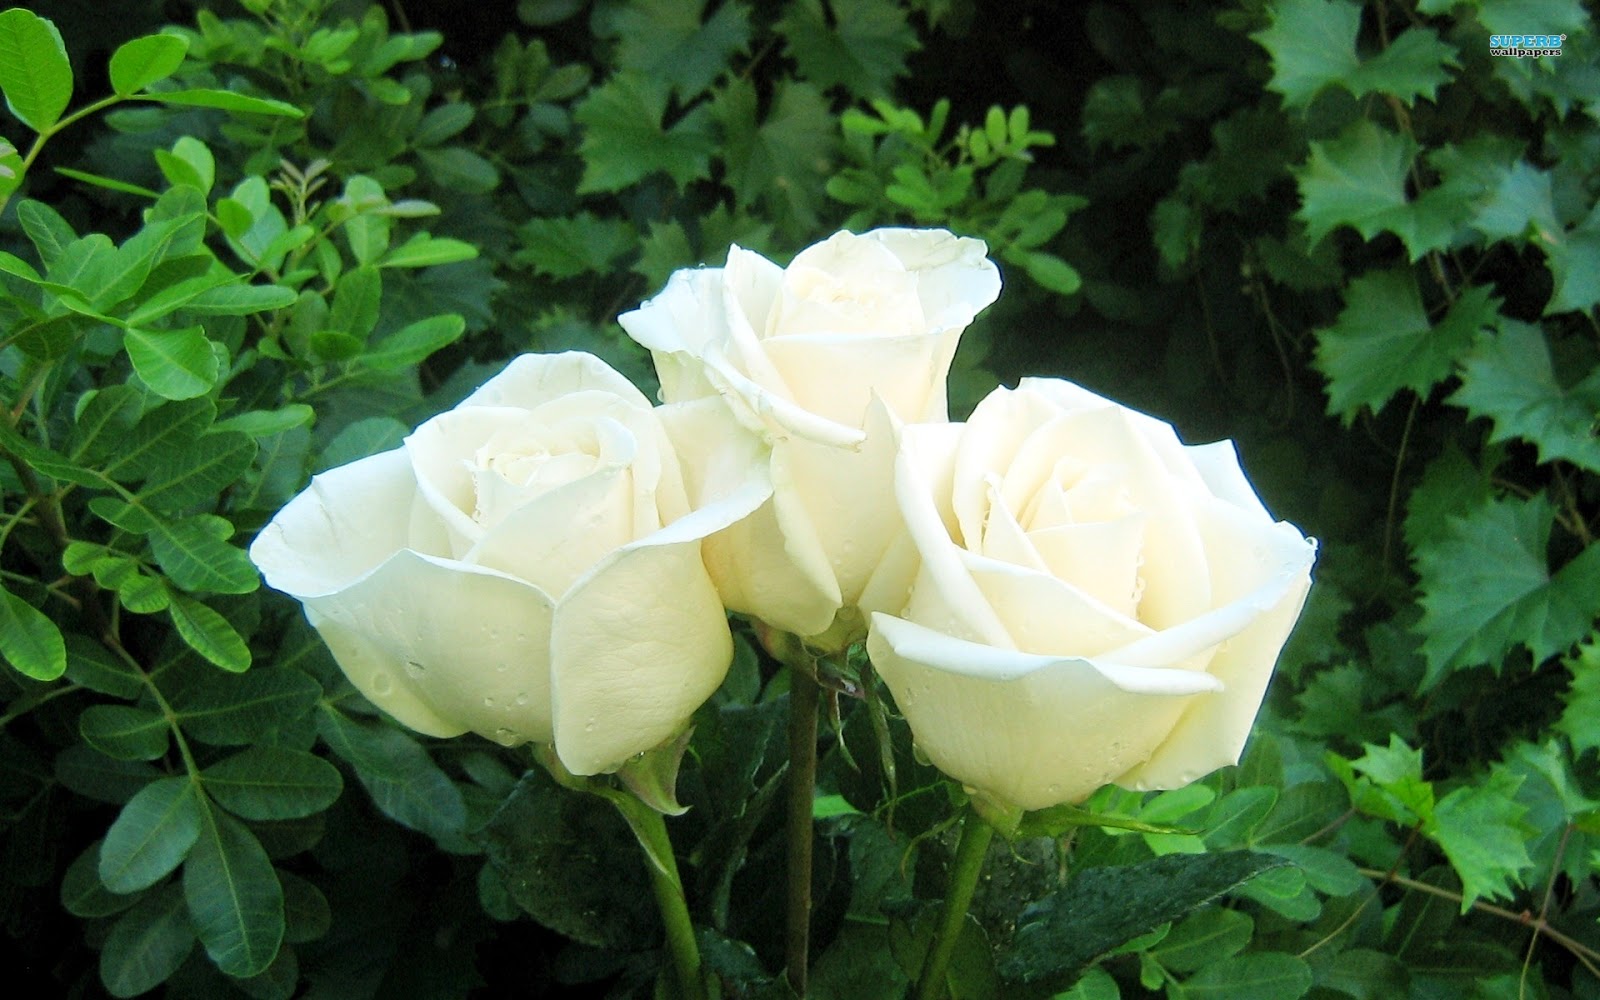 Tặng hoa hồng trắng còn mang ý nghĩa về tình yêu vĩnh cửu, bất diệt và trường tồn cùng với thời gian